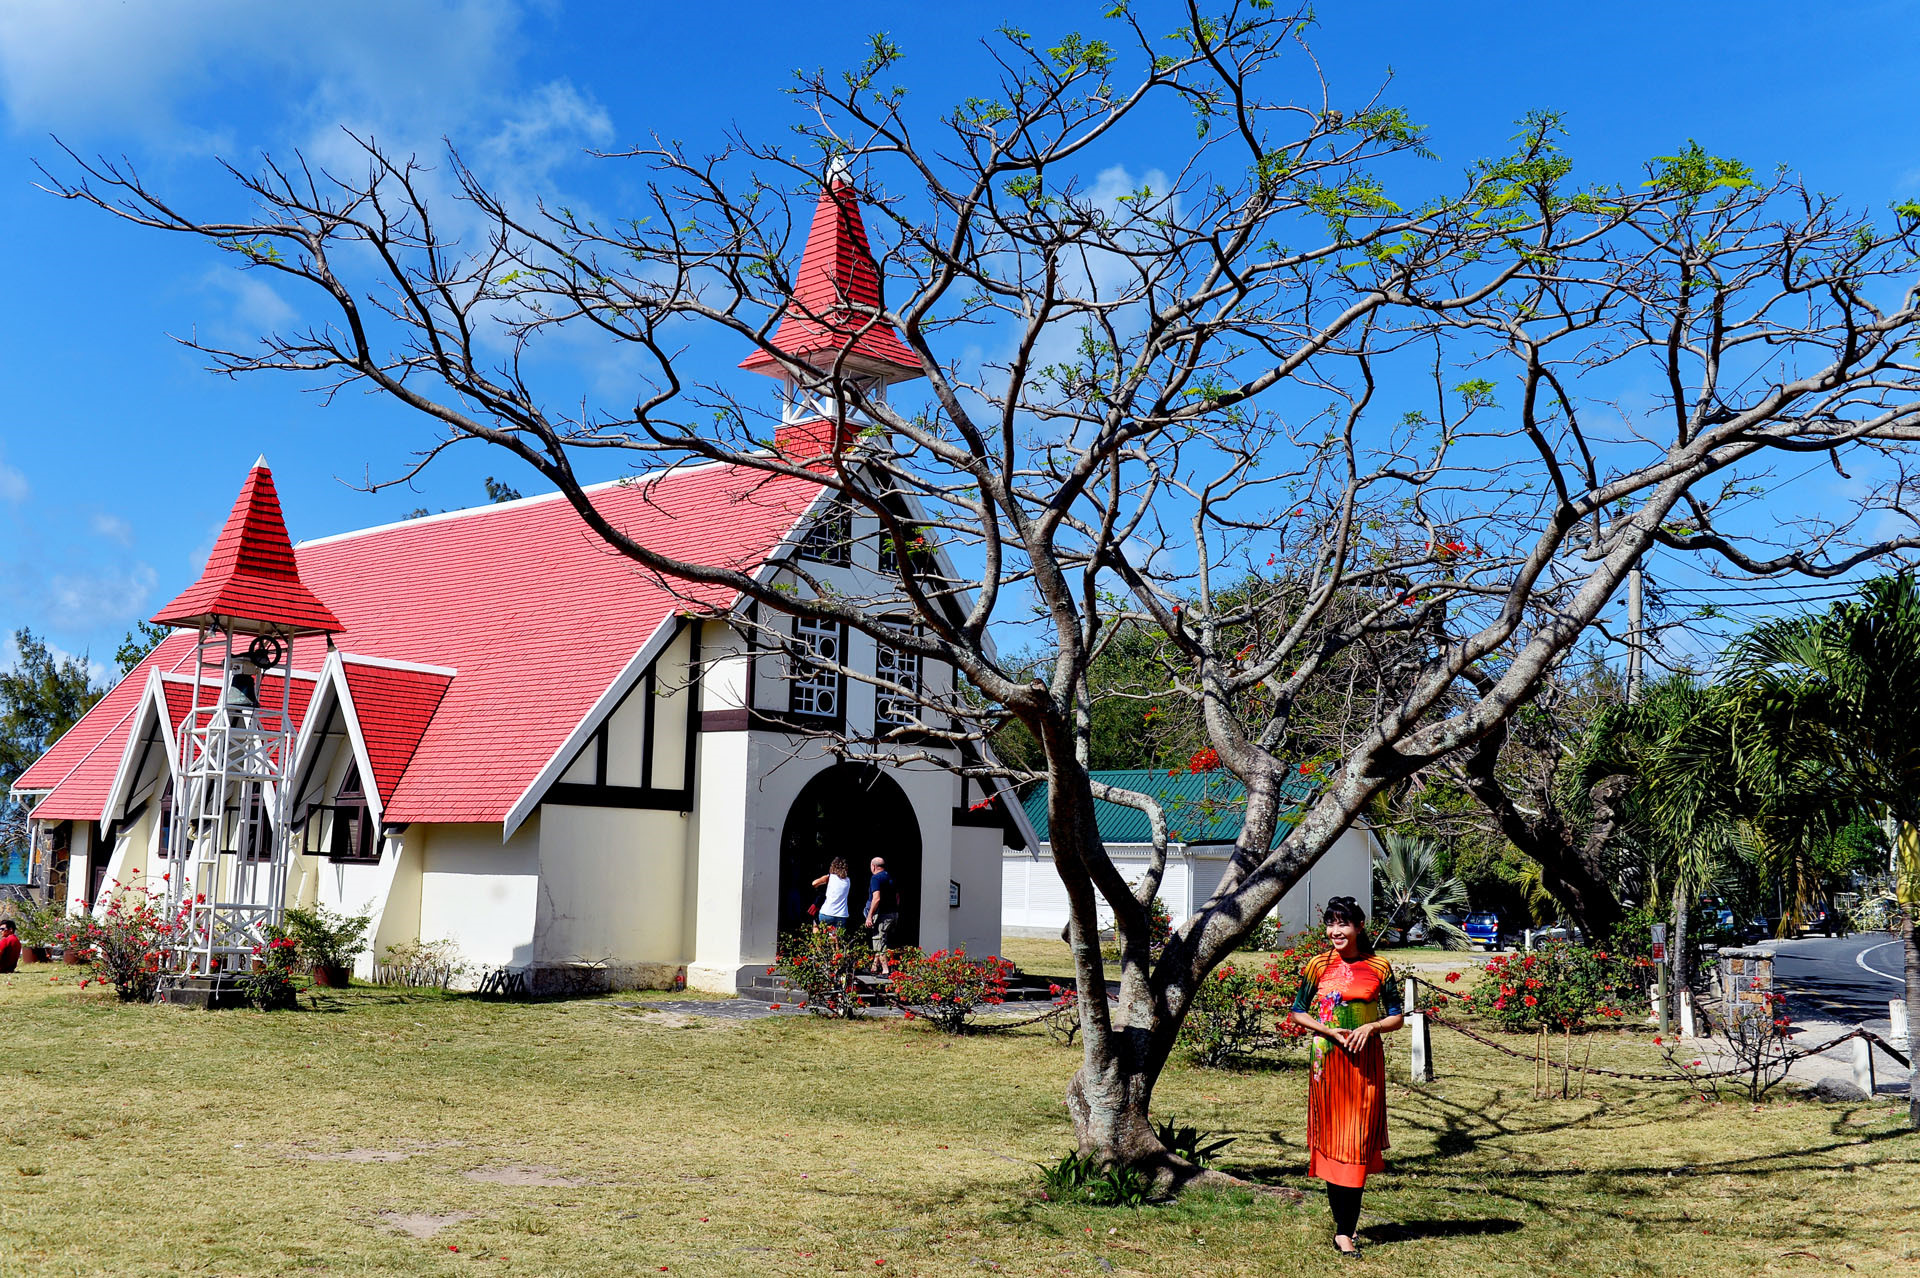 Nhà thờ mái đỏ nằm gần làng chài Cap Malheureux, cực Bắc Mauritius, được xây dựng sau năm 1810 để tưởng nhớ những người đã ngã xuống trong cuộc chiến giành thuộc địa giữa Anh và Pháp. 